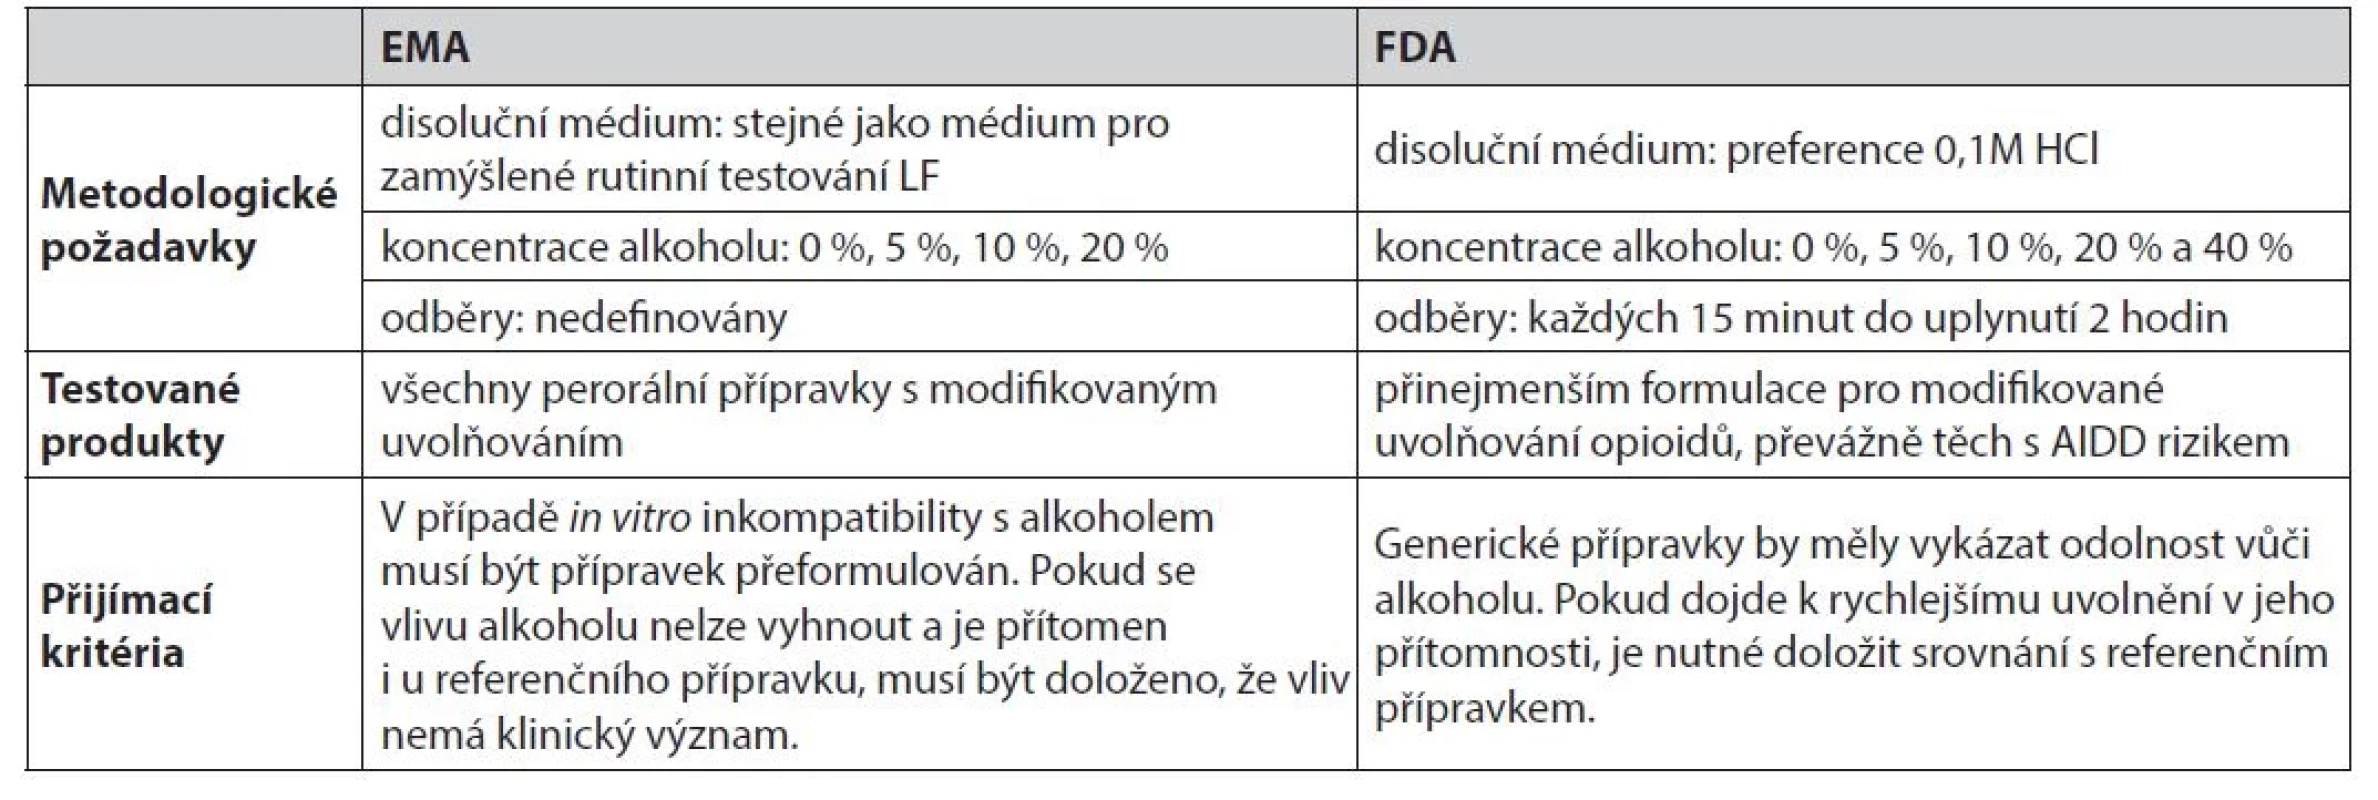 Rozdíly FDA a EMA z hlediska in vitro testování u AIDD rizikových formulací25)